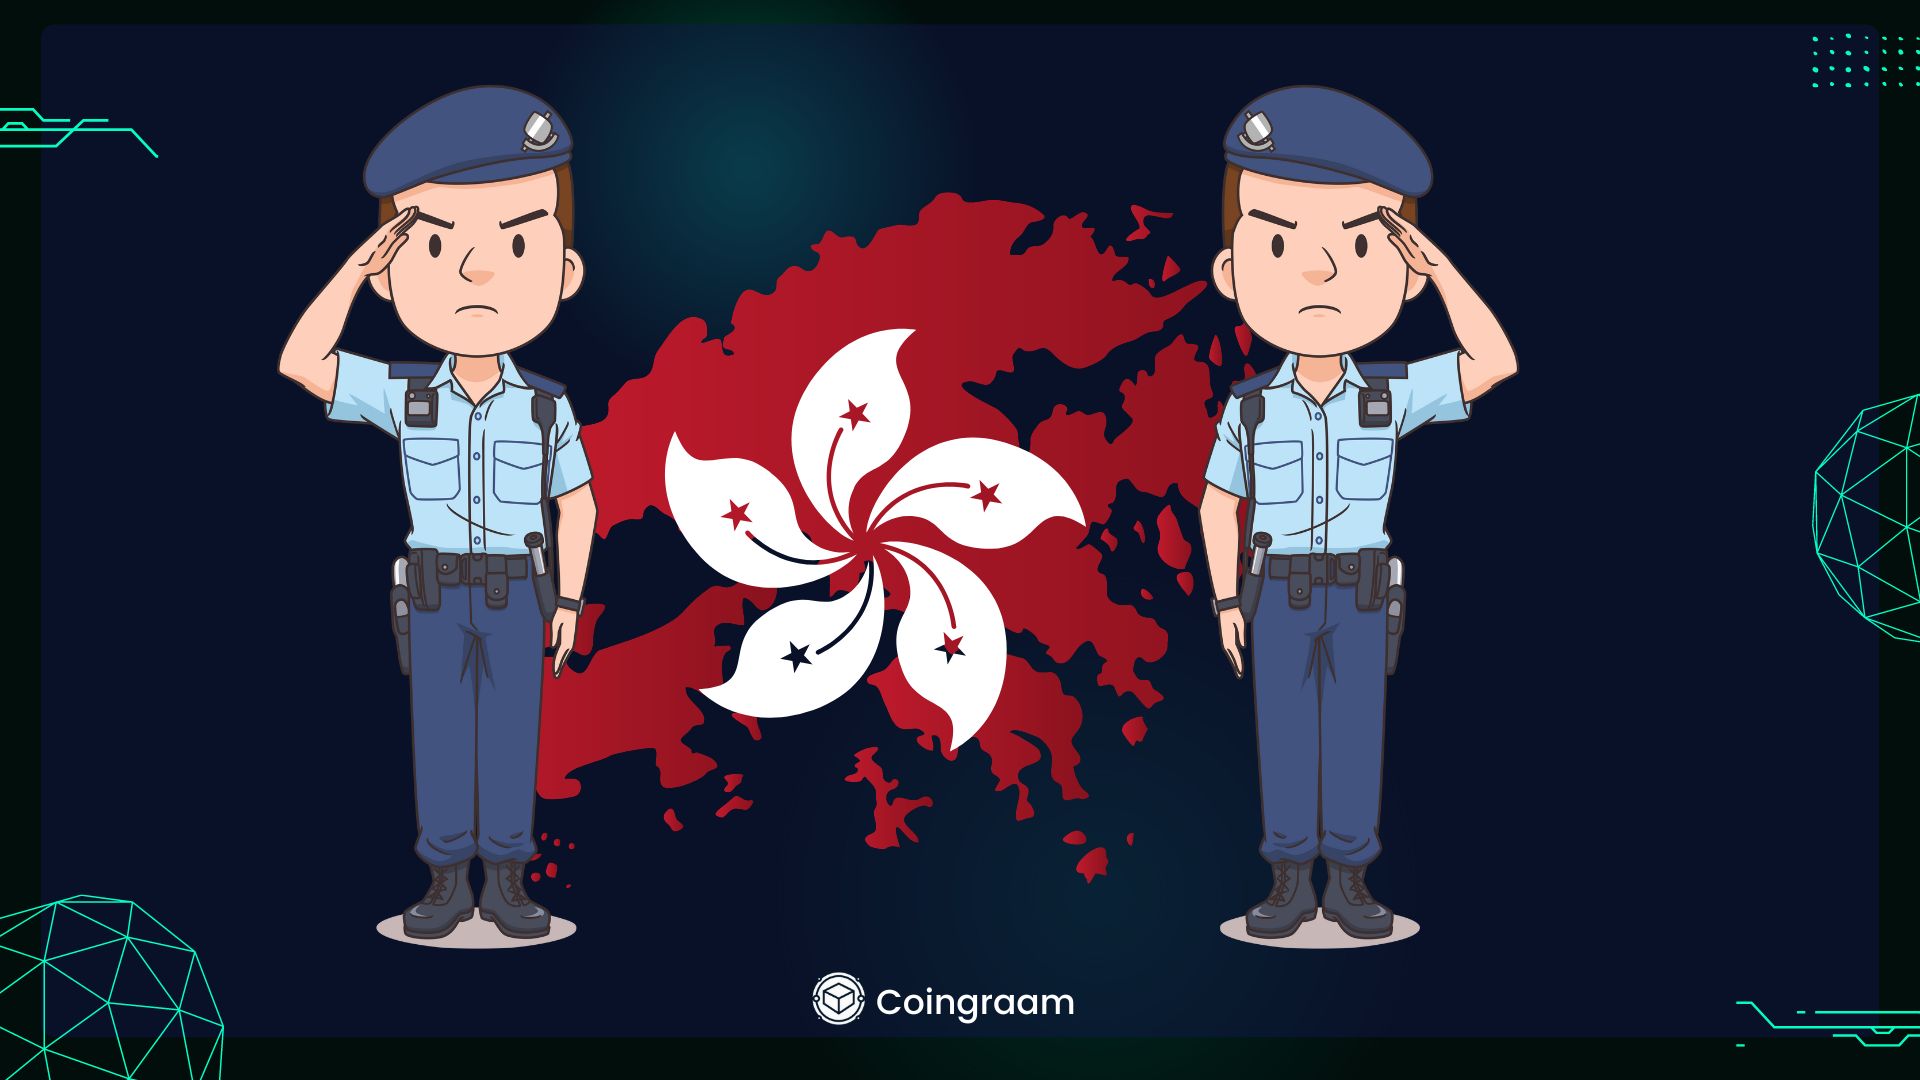 نیروی پلیس هنگ کنگ پلتفرم جدید متاورس به نام CyberDefender را راه اندازی کرد.

